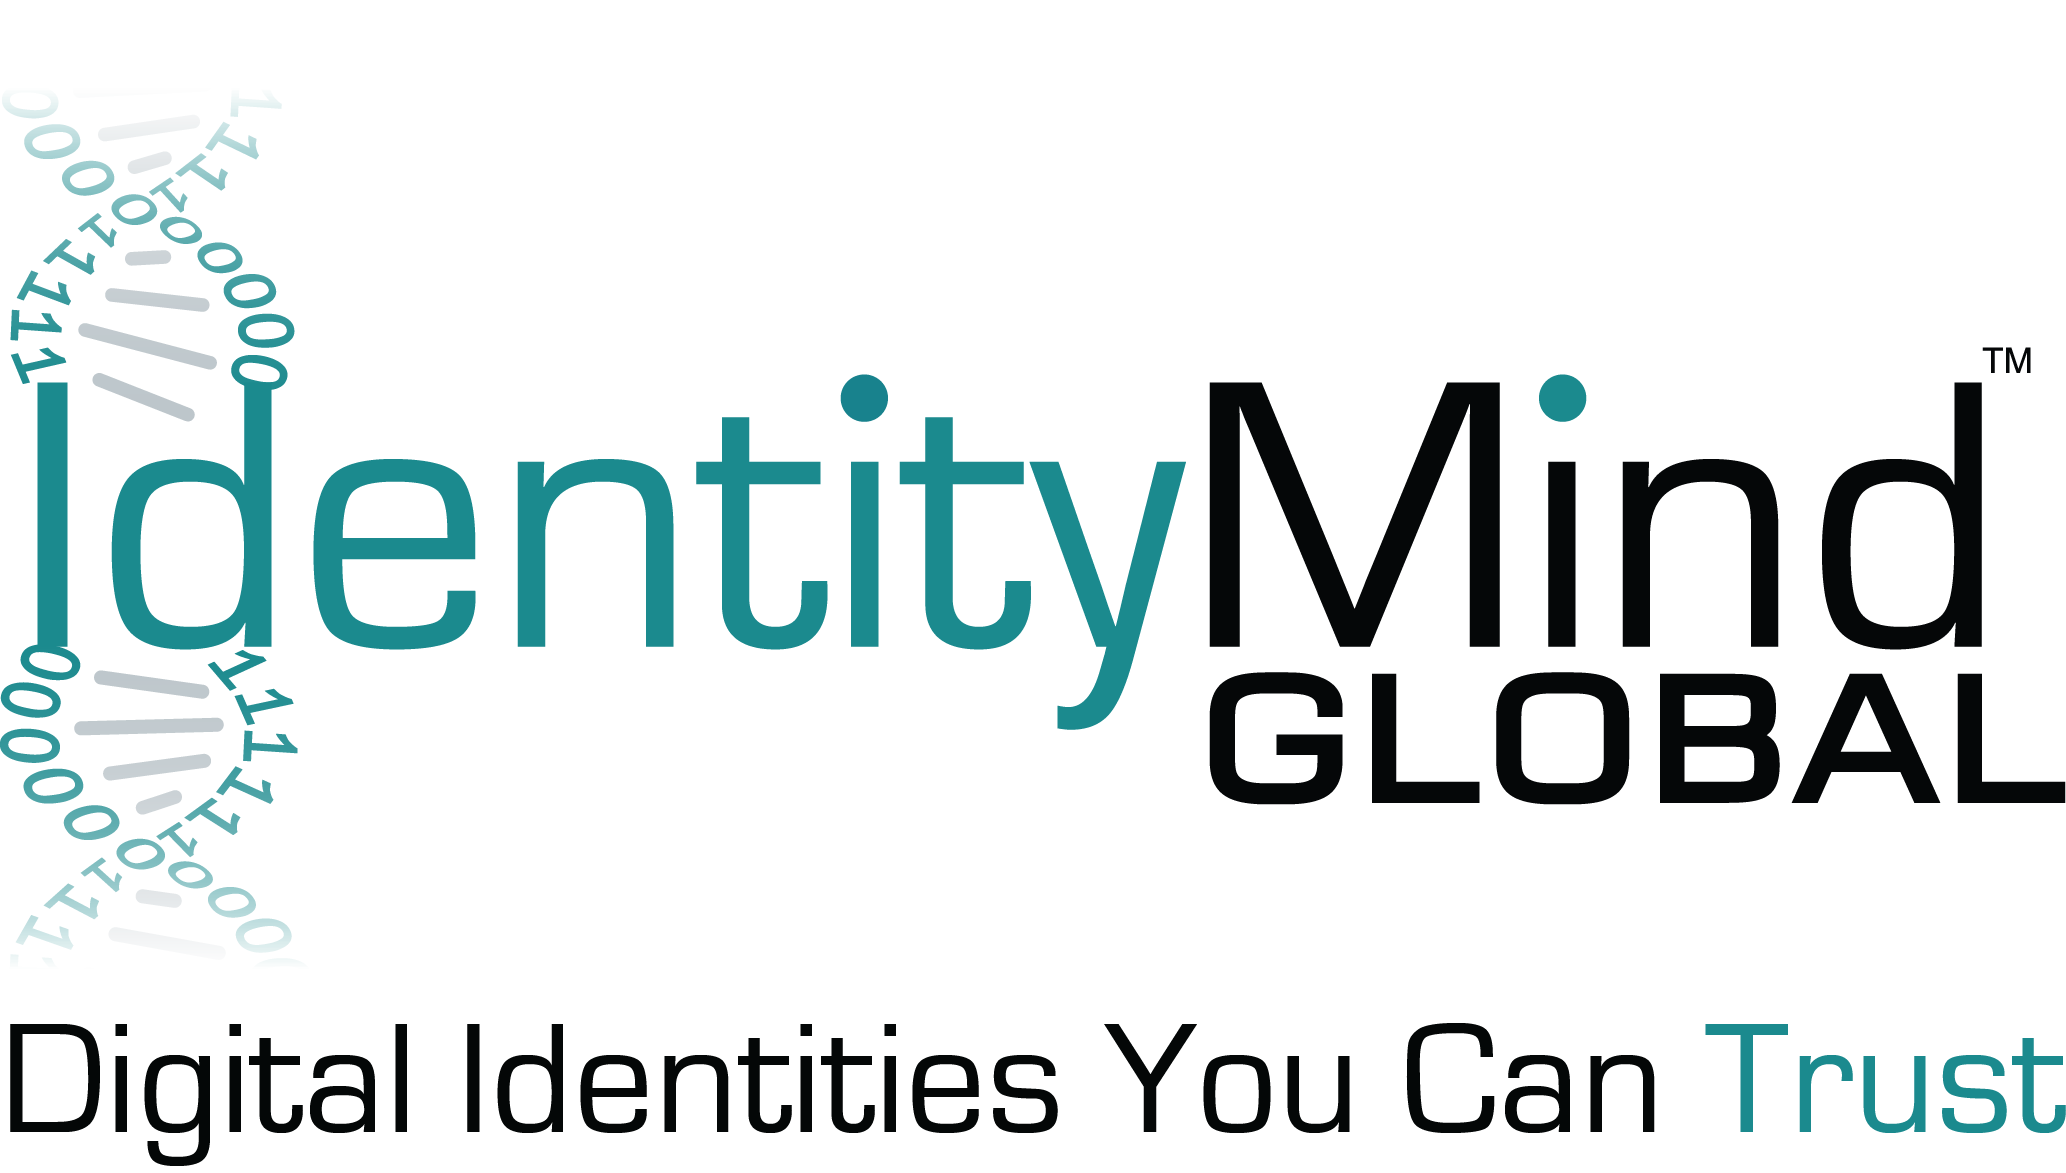 IdentityMind Global Tagline